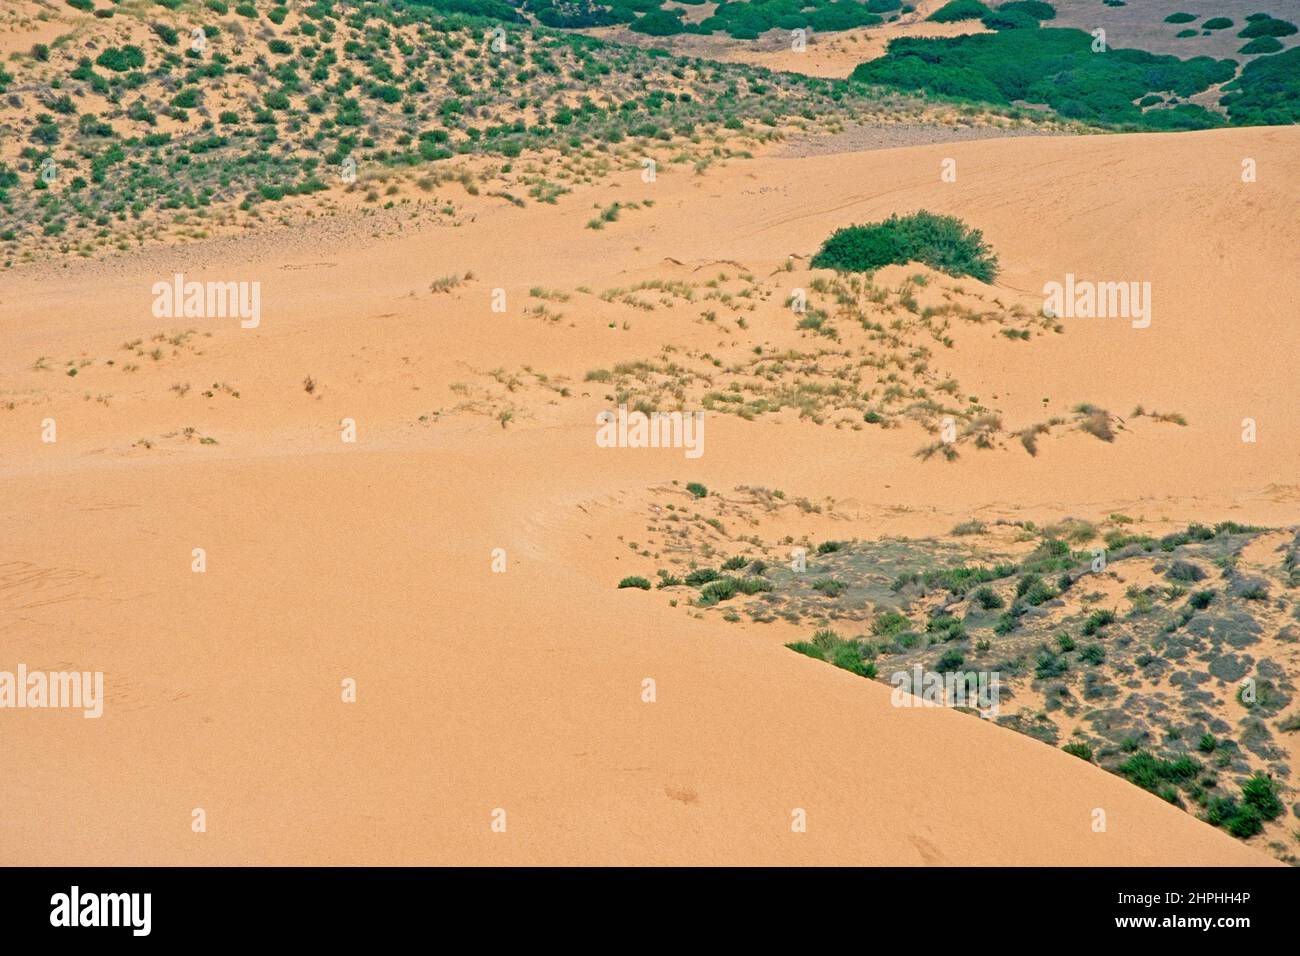 Piscinas Wüste, Sardinien (gescannt von Farblider) Stockfoto